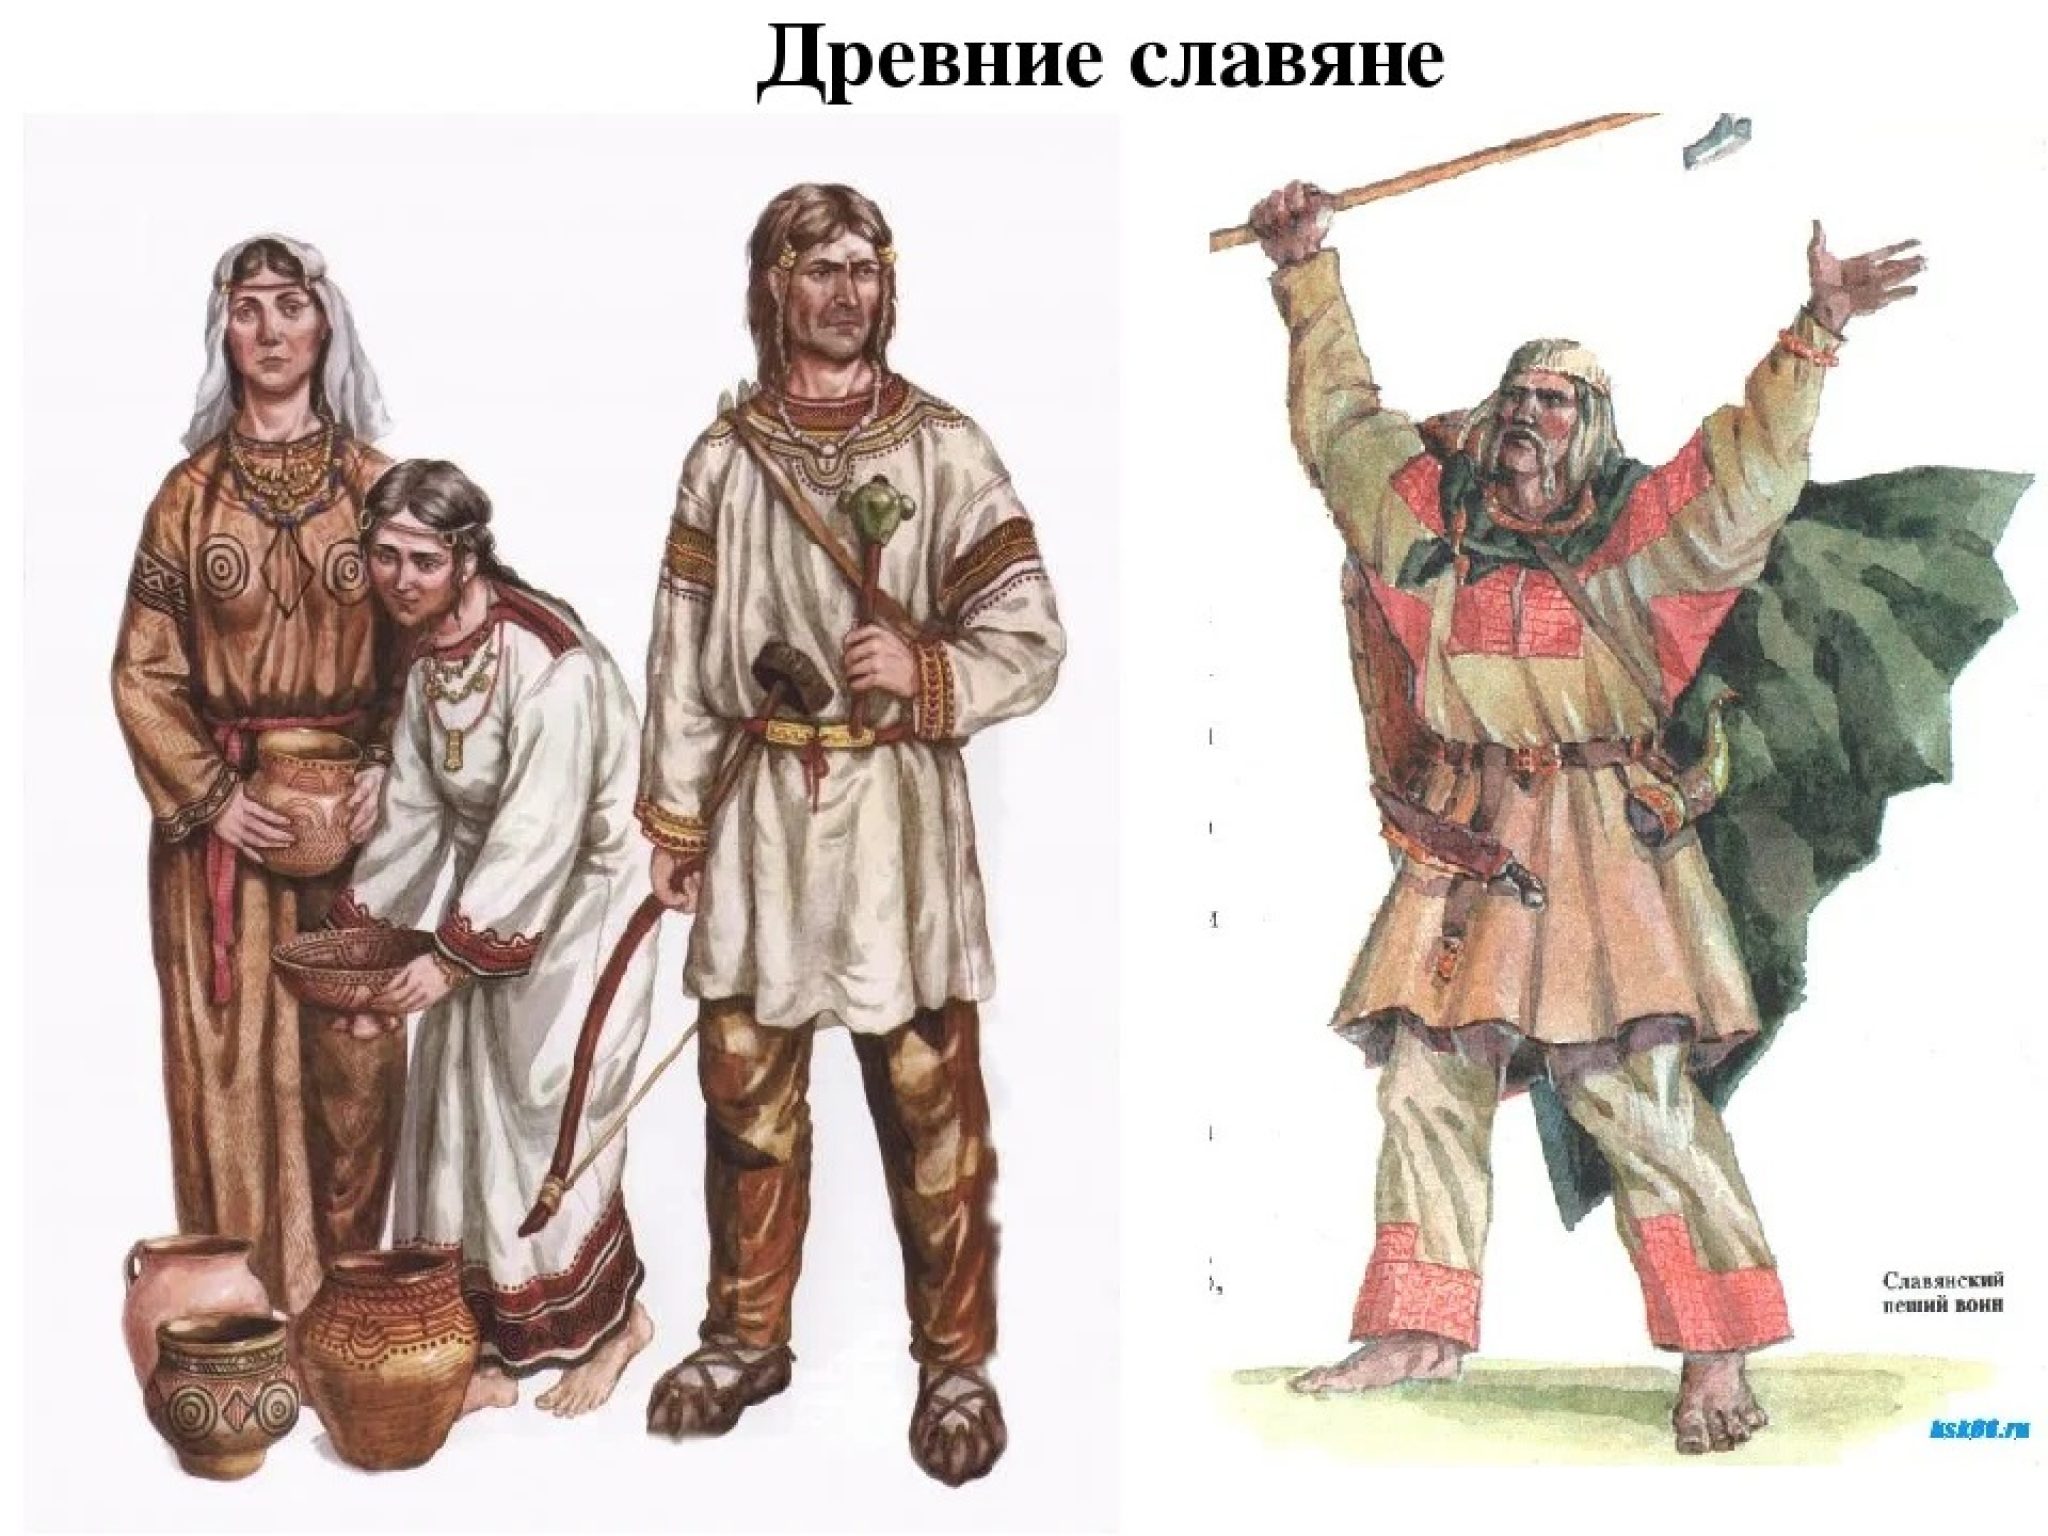 Восточные славяне были предками